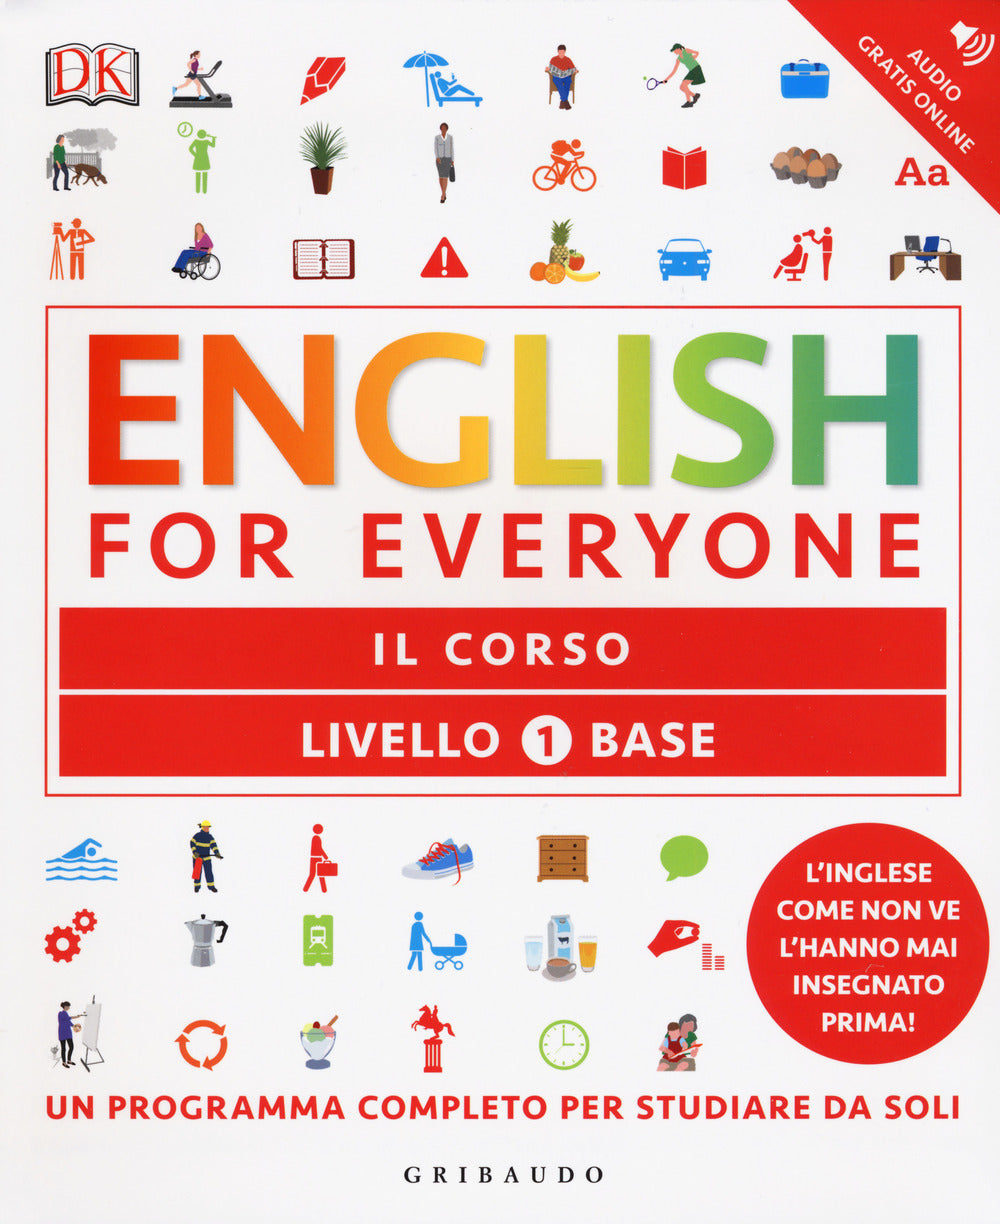 English for everyone. Livello 1° base. Il corso.